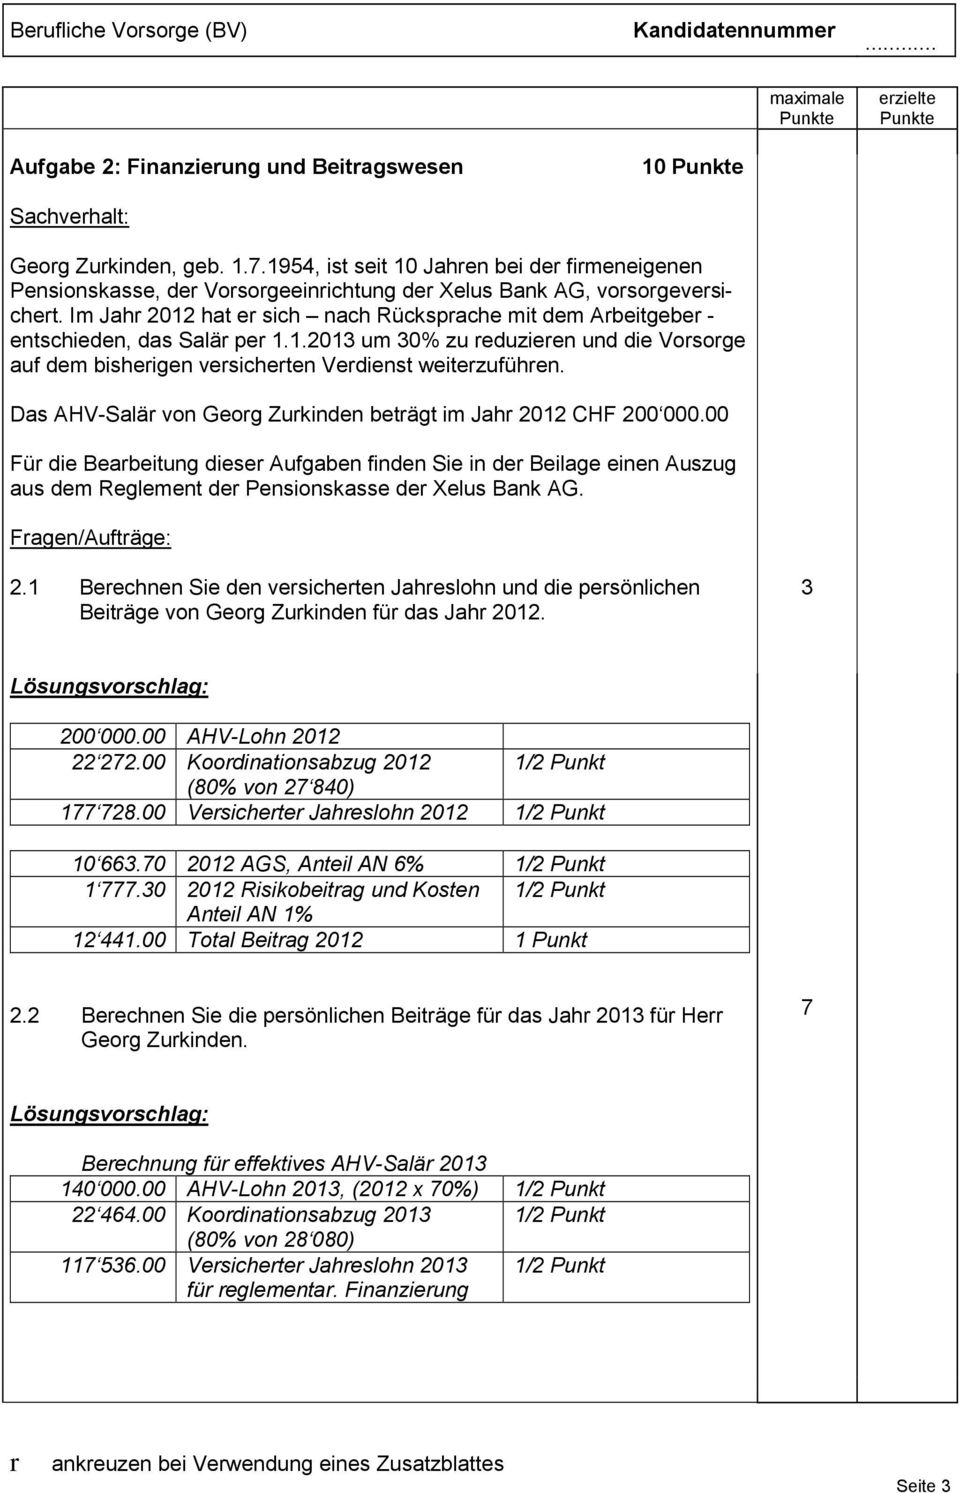 Das AHV-Salär von Georg Zurkinden beträgt im Jahr 2012 CHF 200 000.00 Für die Bearbeitung dieser Aufgaben finden Sie in der Beilage einen Auszug aus dem Reglement der Pensionskasse der Xelus Bank AG.